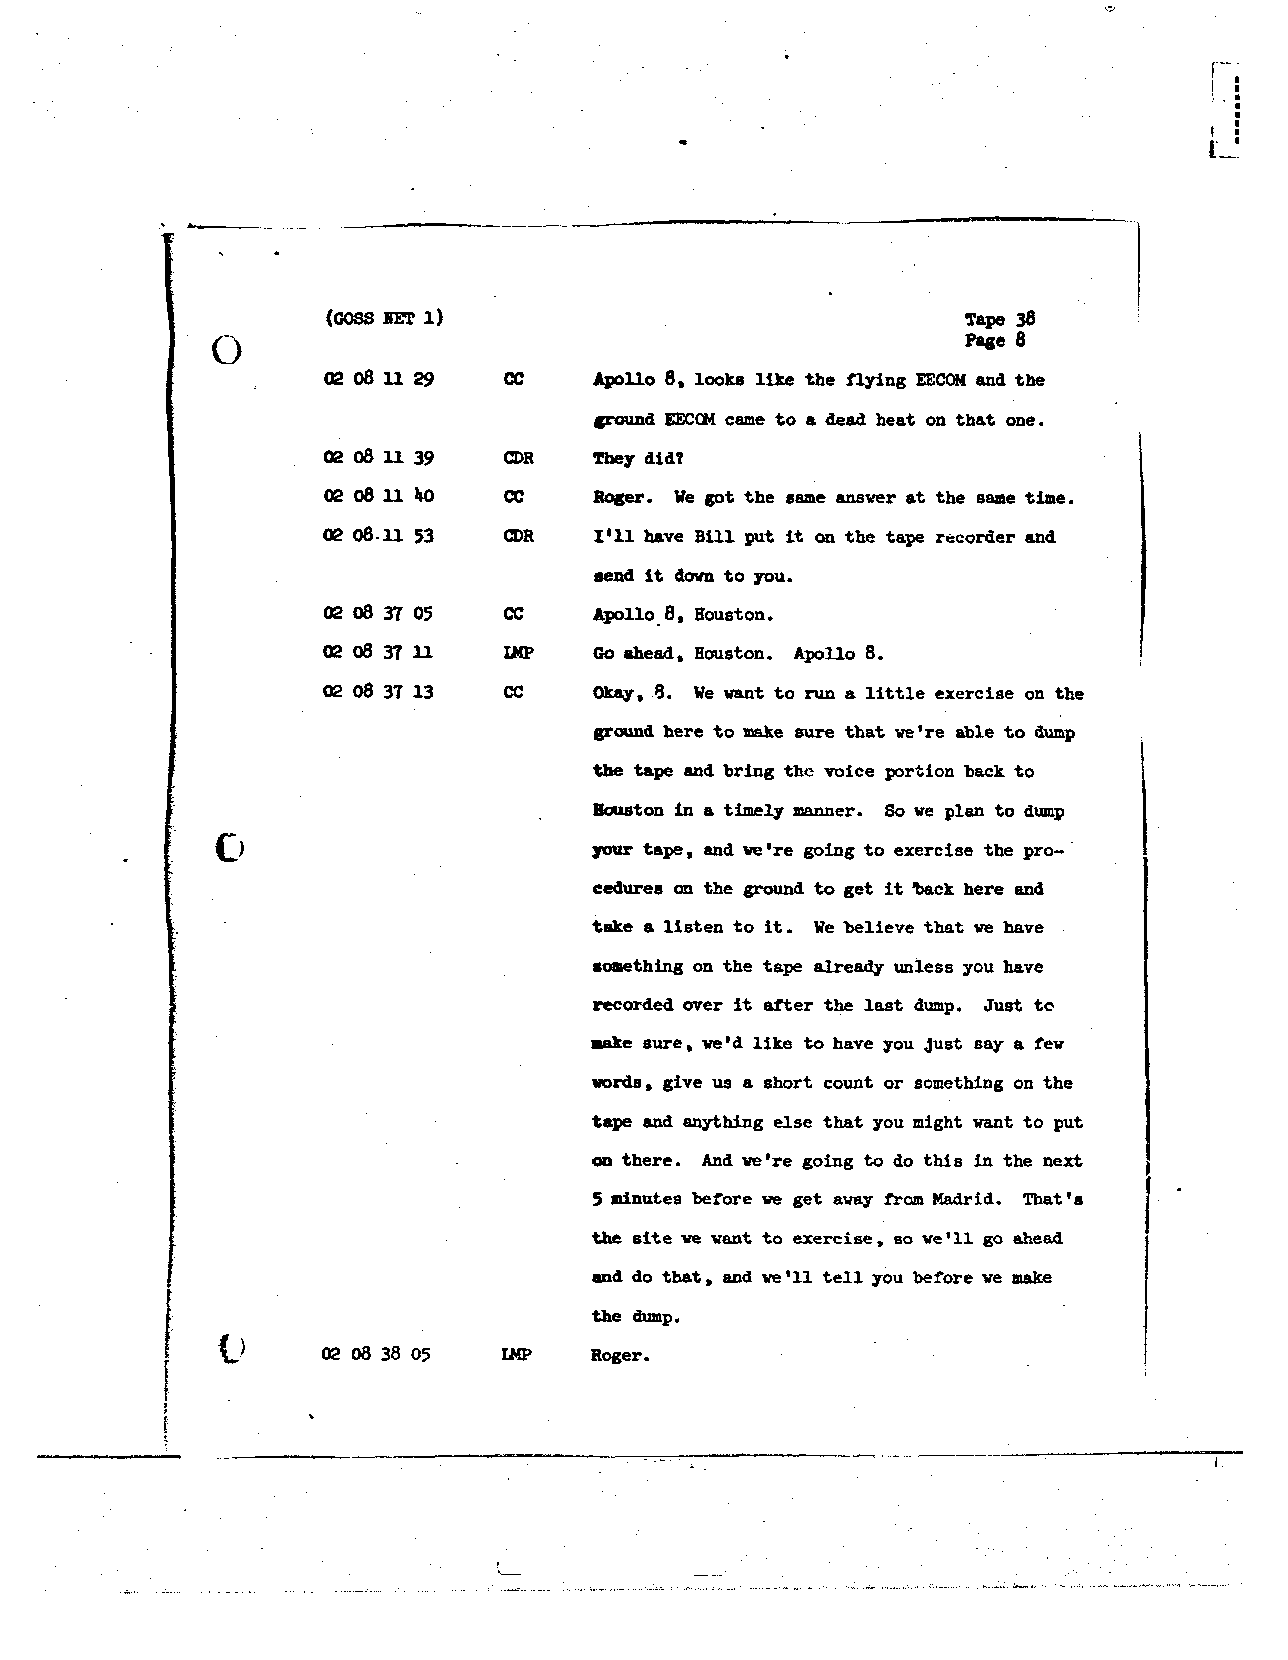 Page 301 of Apollo 8’s original transcript